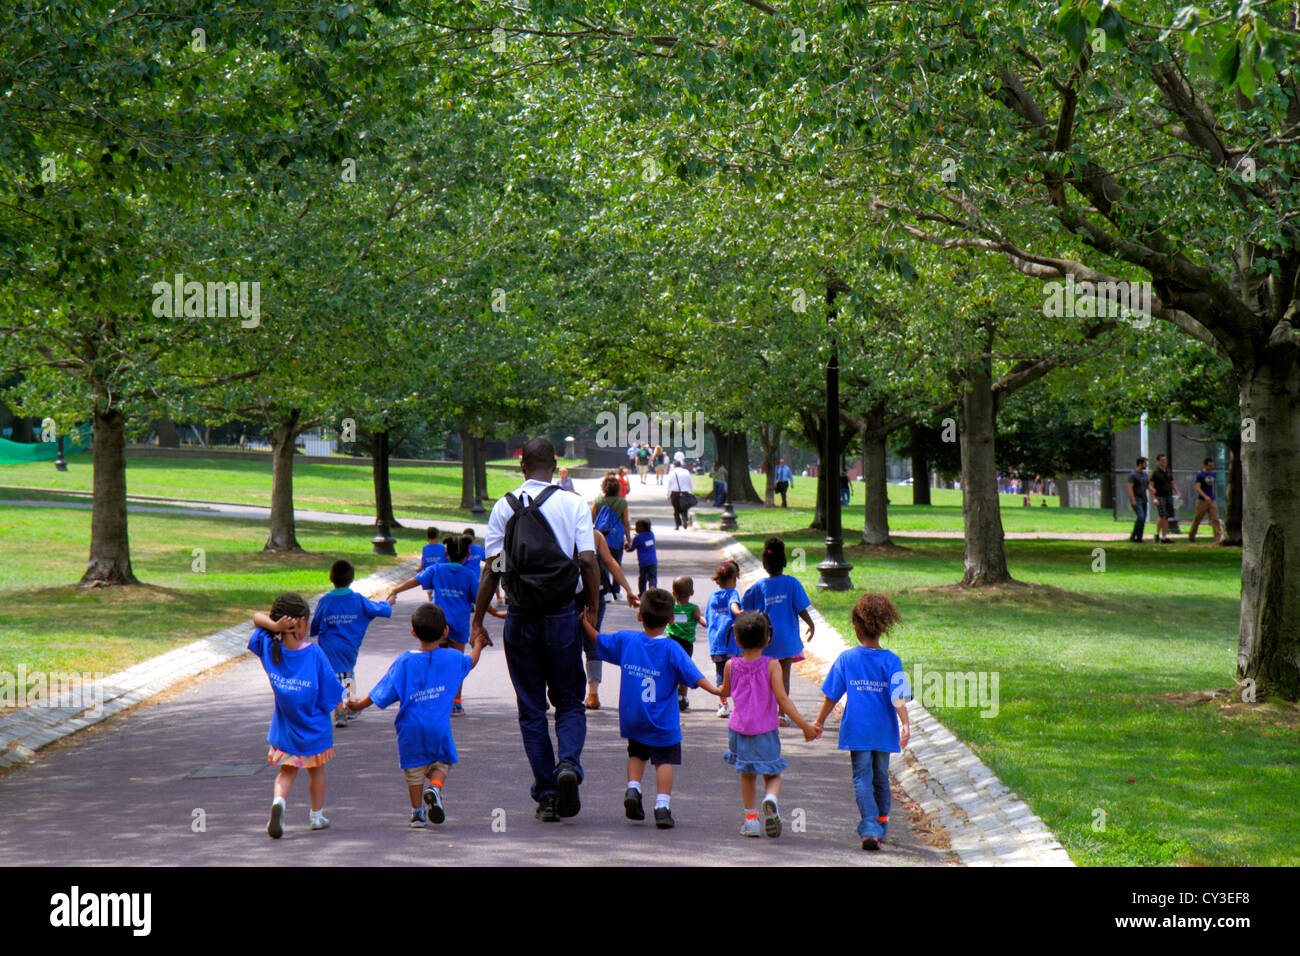 Boston Massachusetts,Boston Common,parc public,garderie,garderie,classe,Black man hommes hommes adultes,garçons,enfants enfants enfants jeunes,fille Banque D'Images